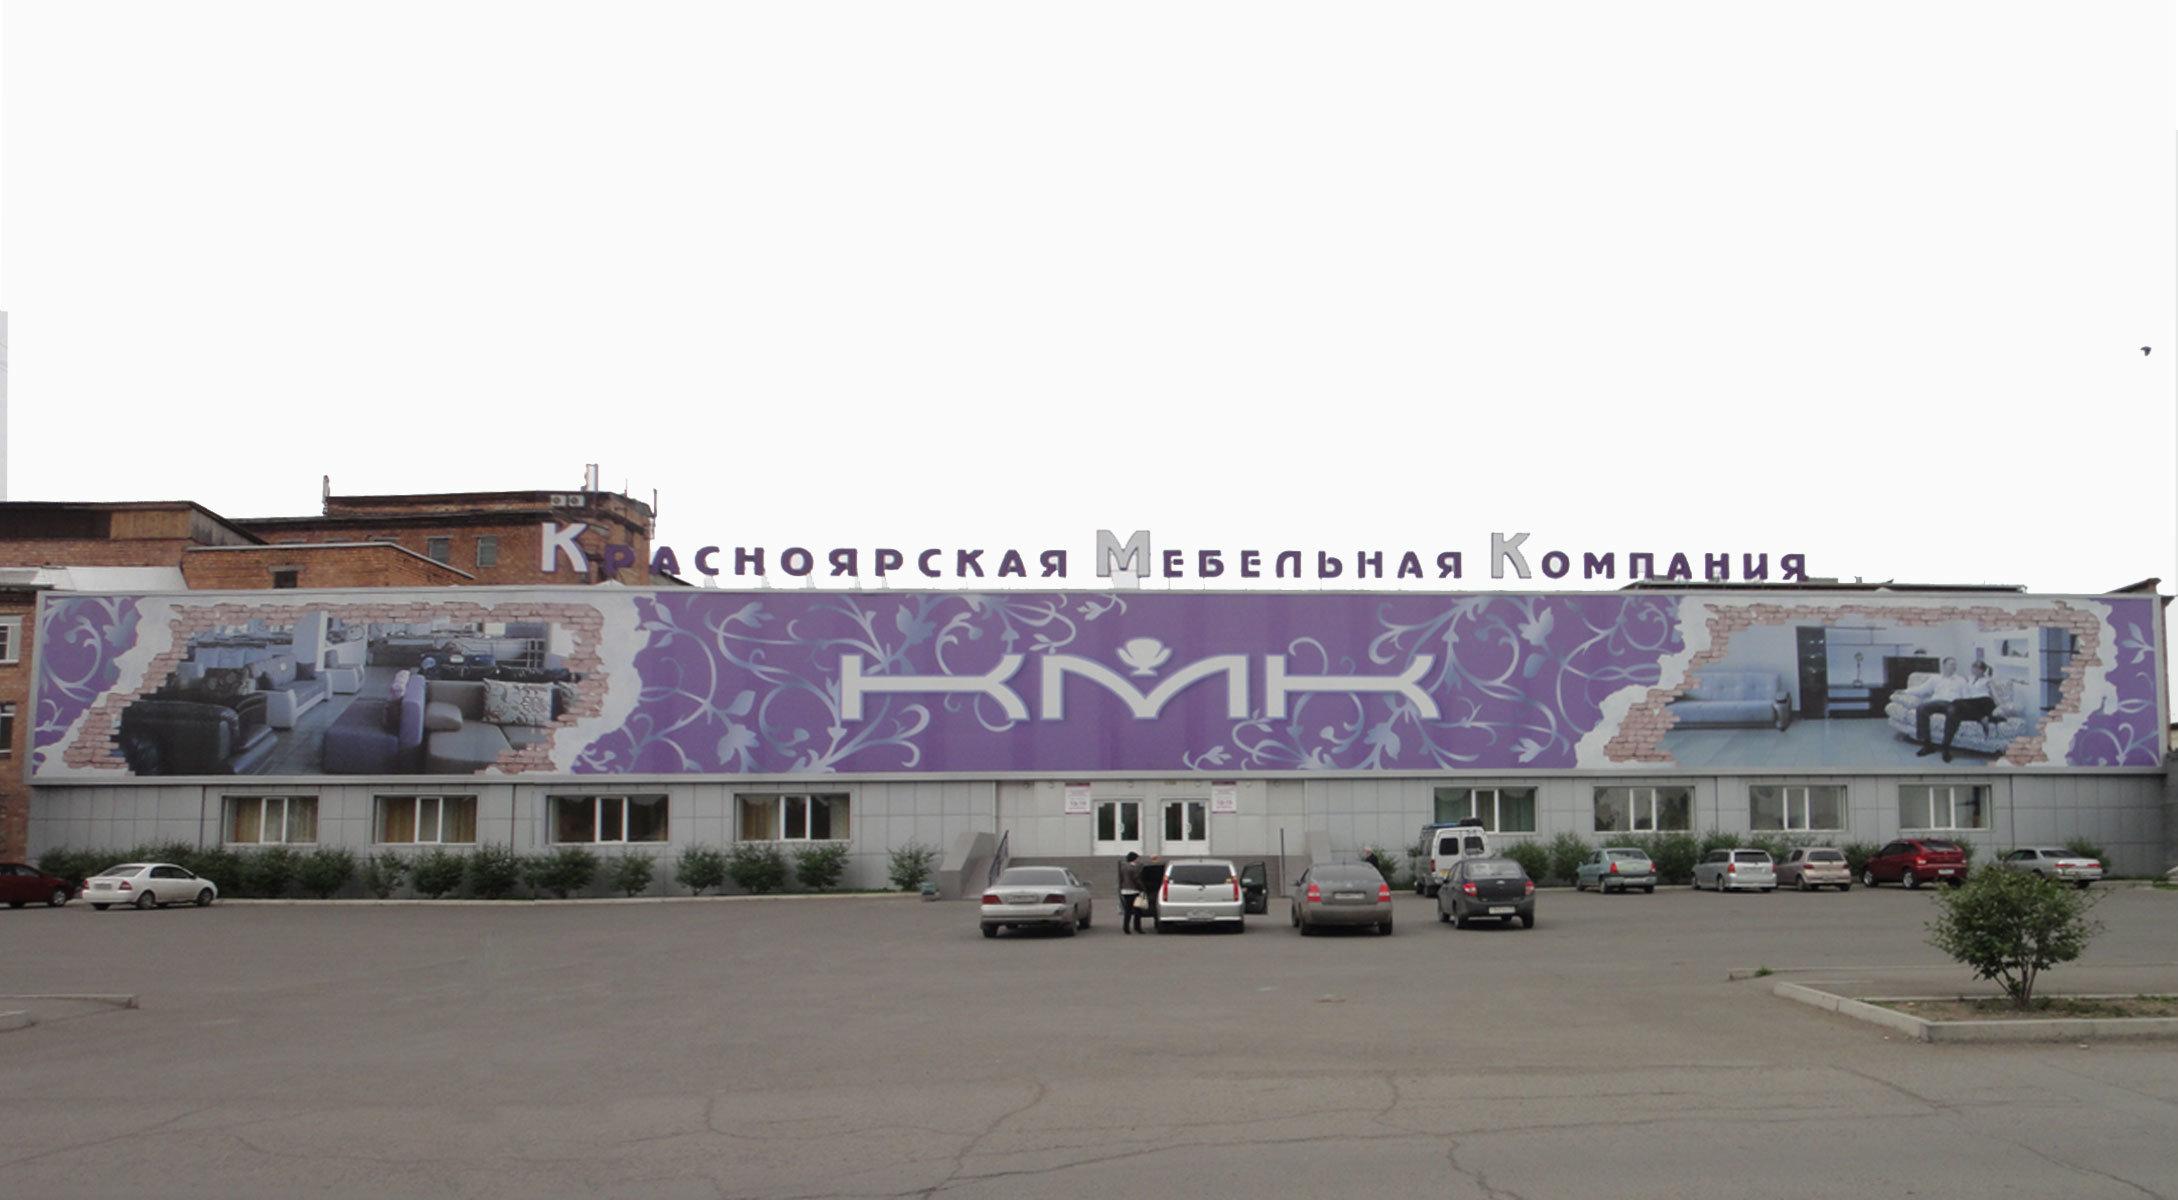 Красноярская мебельная компания, Абакан